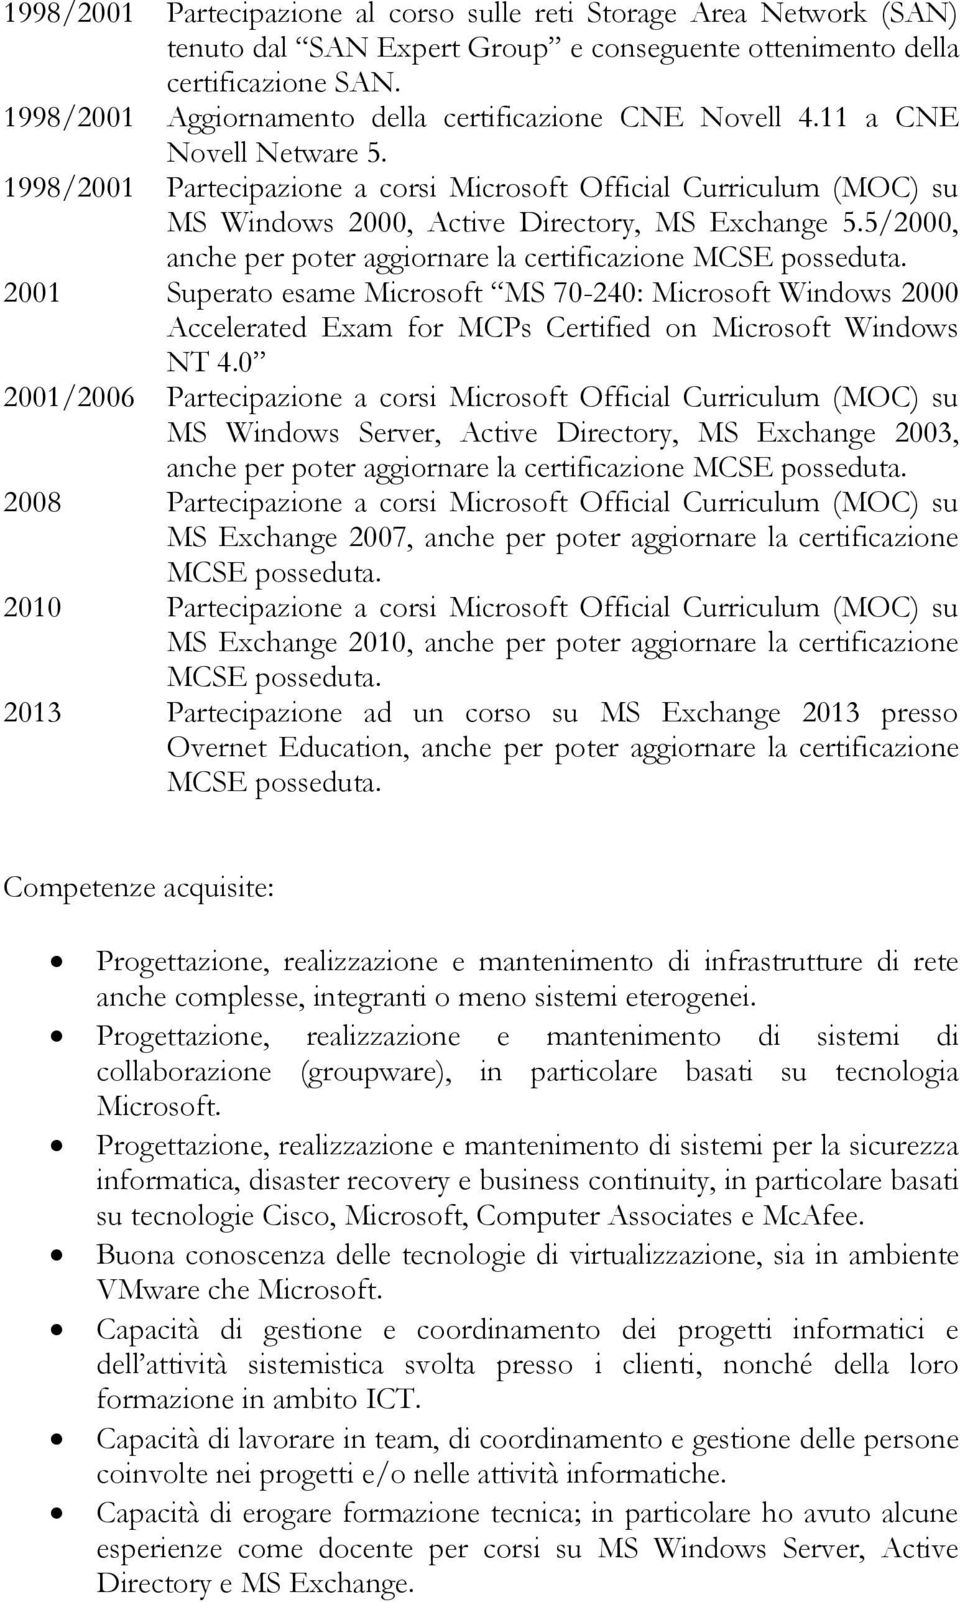 1998/2001 Partecipazione a corsi Microsoft Official Curriculum (MOC) su MS Windows 2000, Active Directory, MS Exchange 5.5/2000, anche per poter aggiornare la certificazione MCSE posseduta.